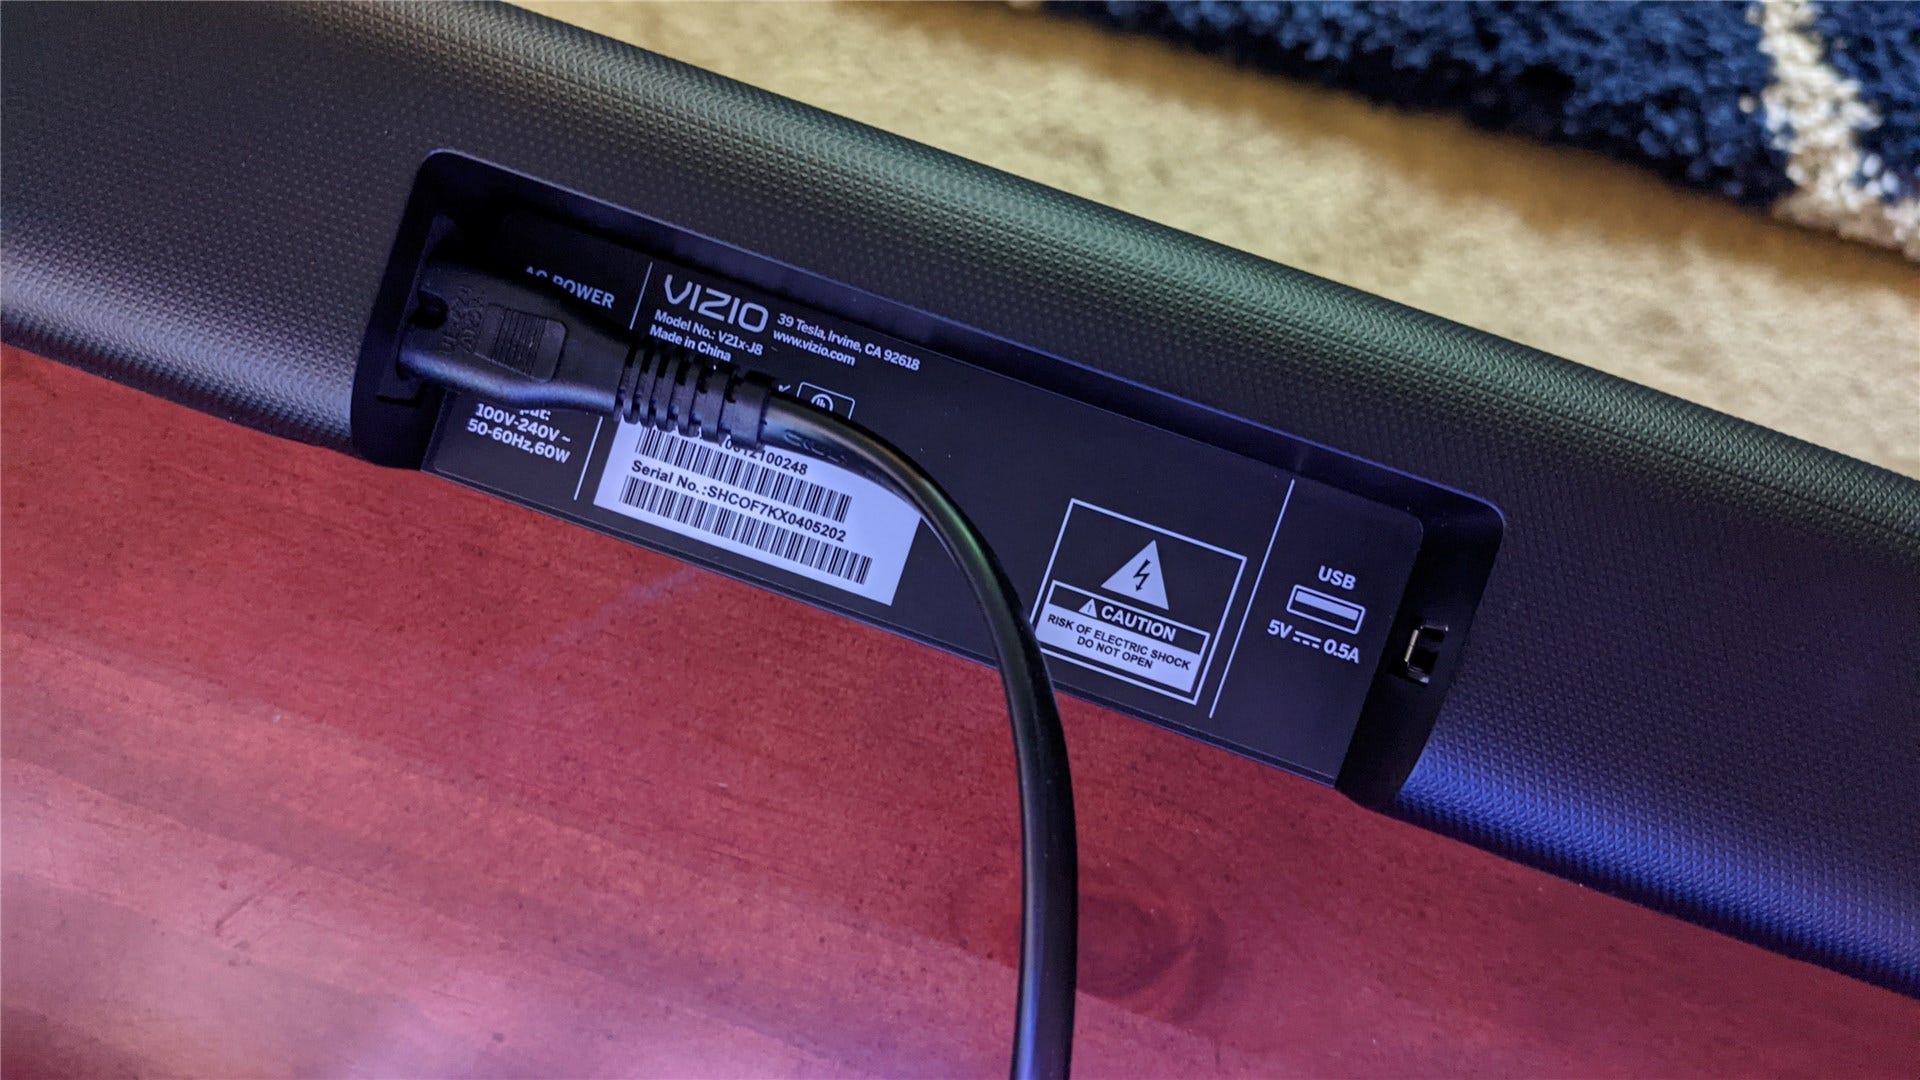 Bagian belakang soundbar V-Series menunjukkan daya dan koneksi USB